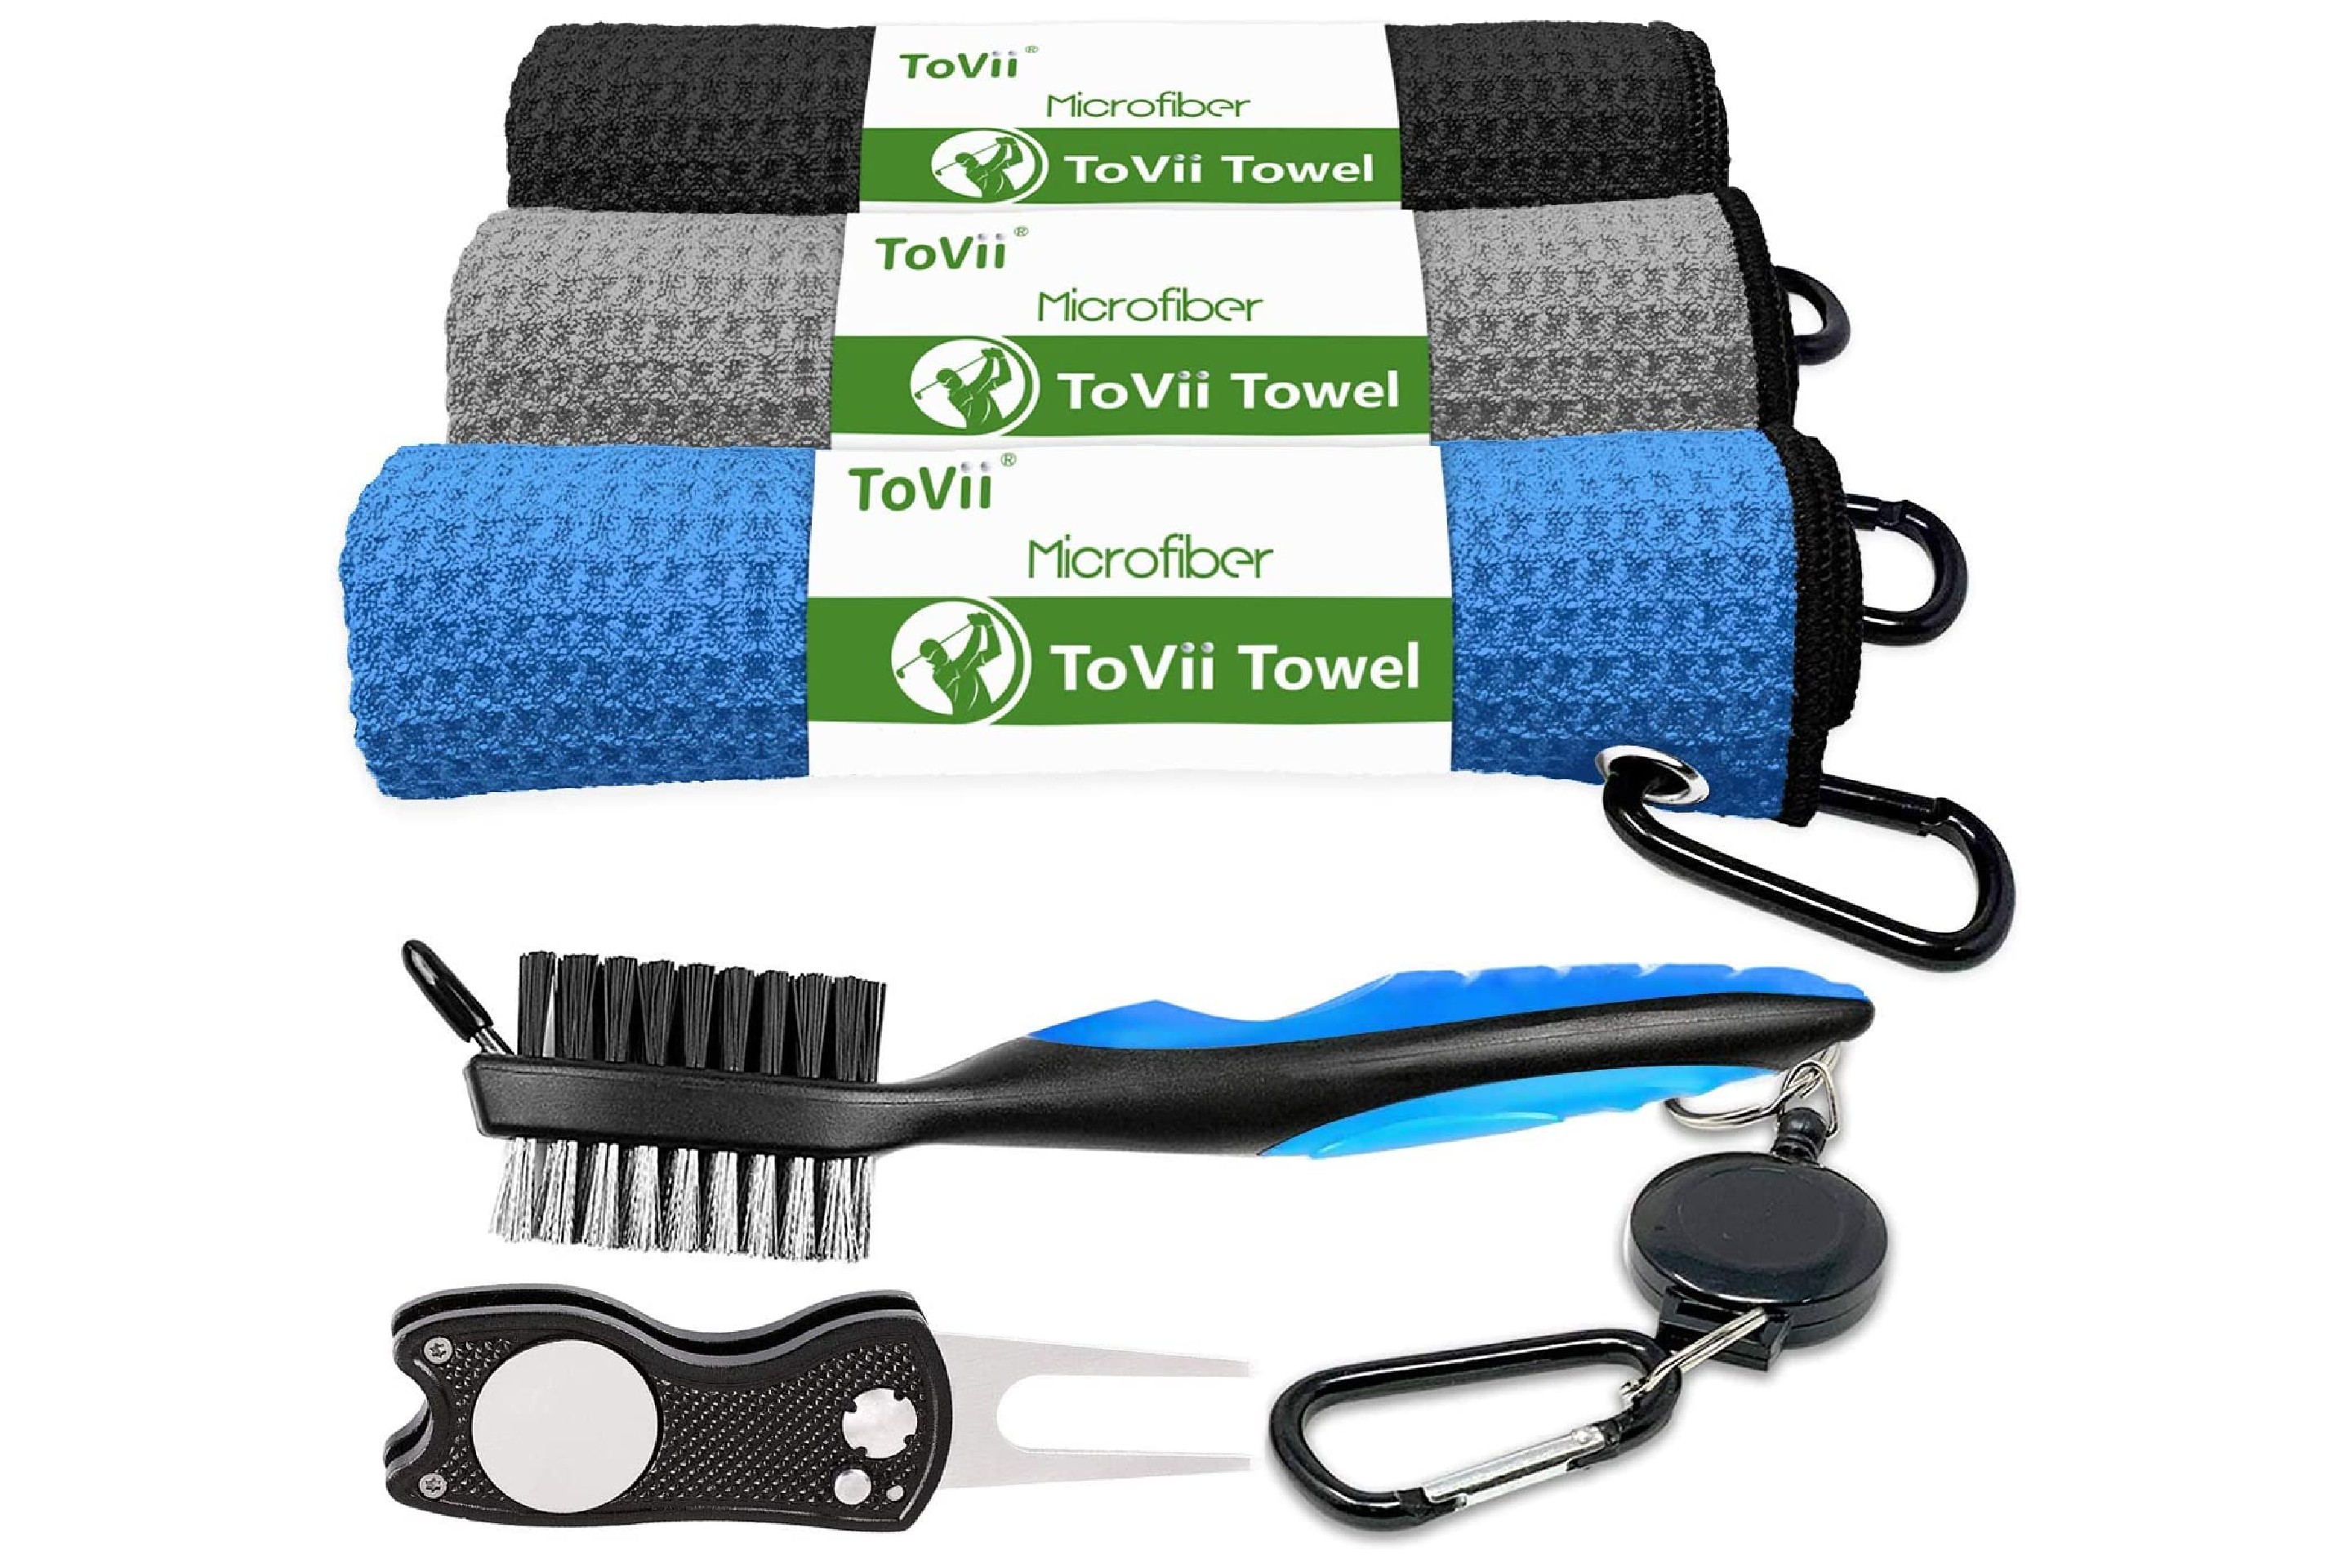 ToVii Microfiber Golf Towel Set